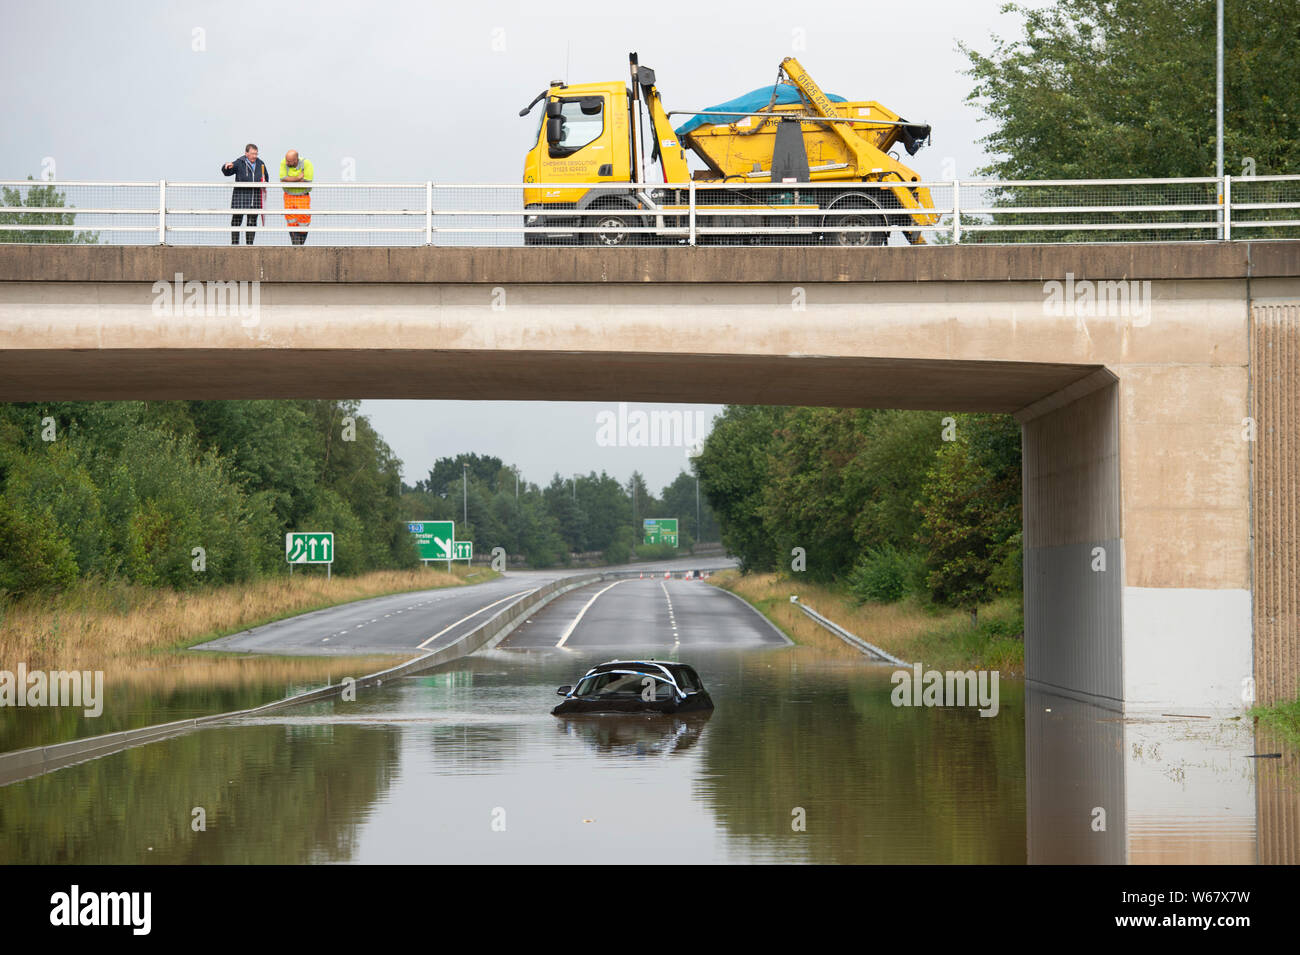 En Handforth, Reino Unido. El 31 de julio, 2019. Un automóvil BMW es abandonado en las aguas de la inundación en el aeropuerto de Manchester A555 carretera de alivio tras las fuertes lluvias durante días consecutivos. Crédito: Russell Hart/Alamy Live News Foto de stock